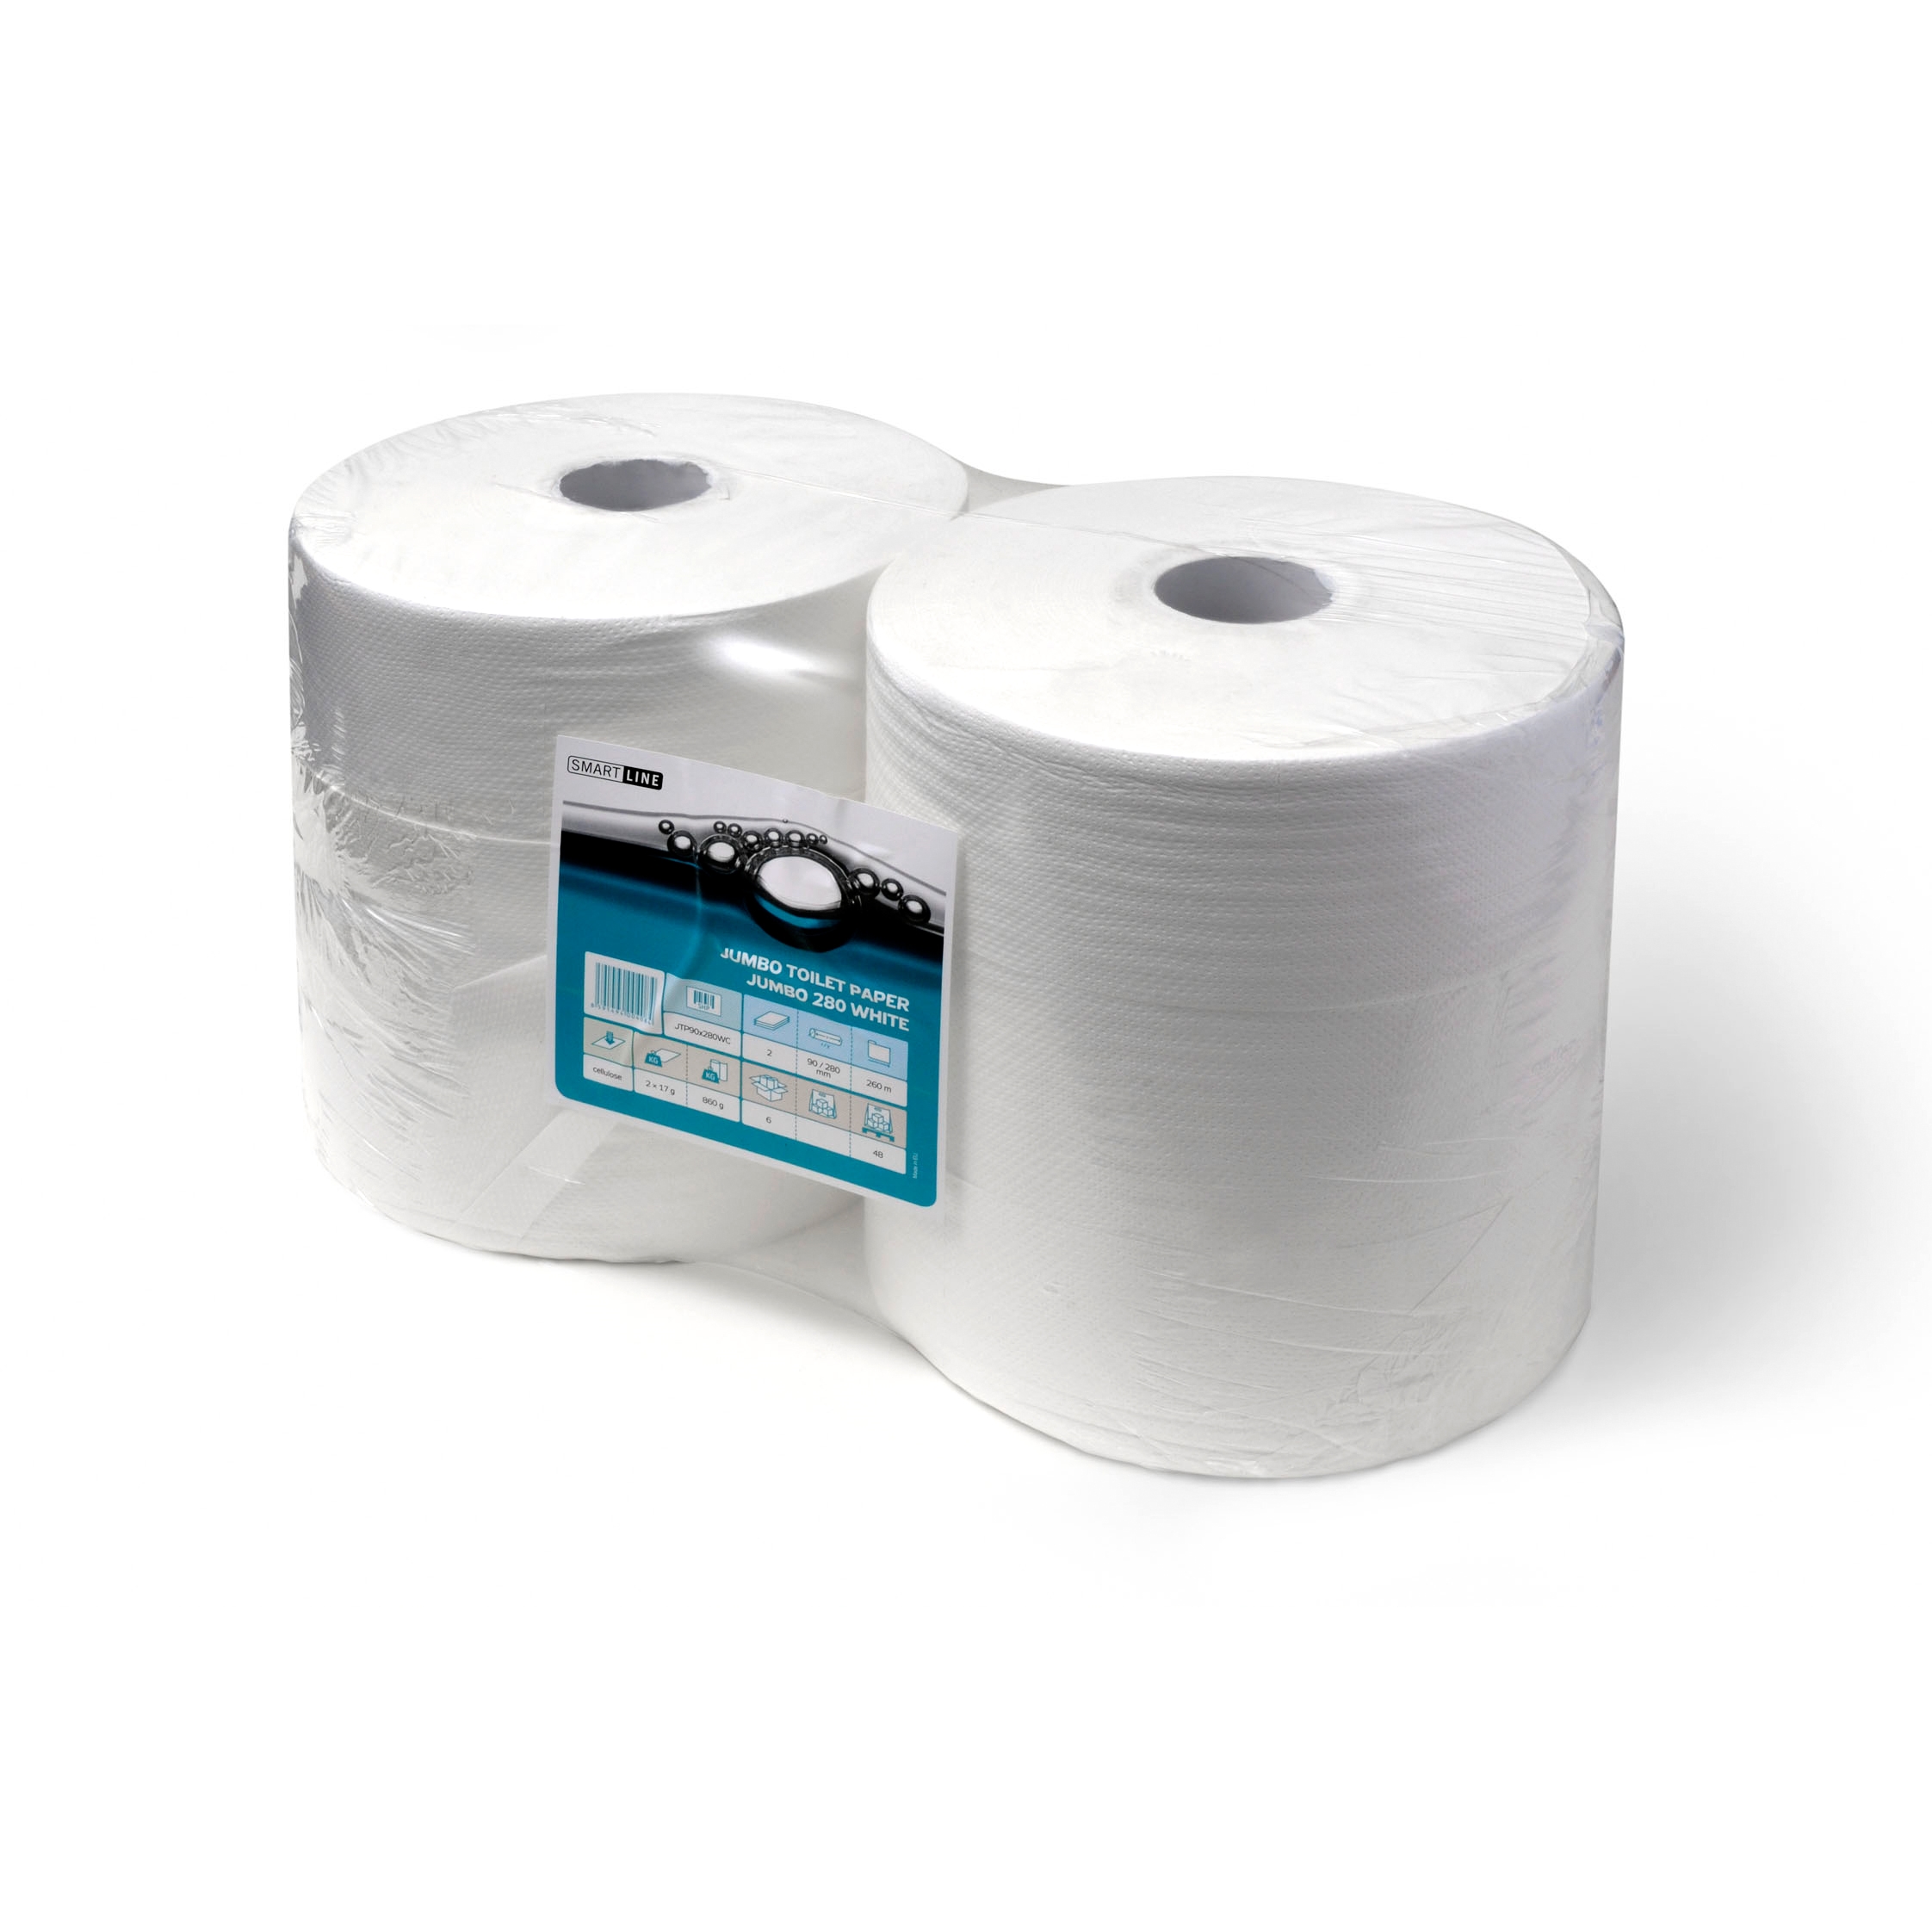 Papír toaletní v roli Harmony JUMBO šíře 240 mm, 2 vrstvy, celulóza, bílý